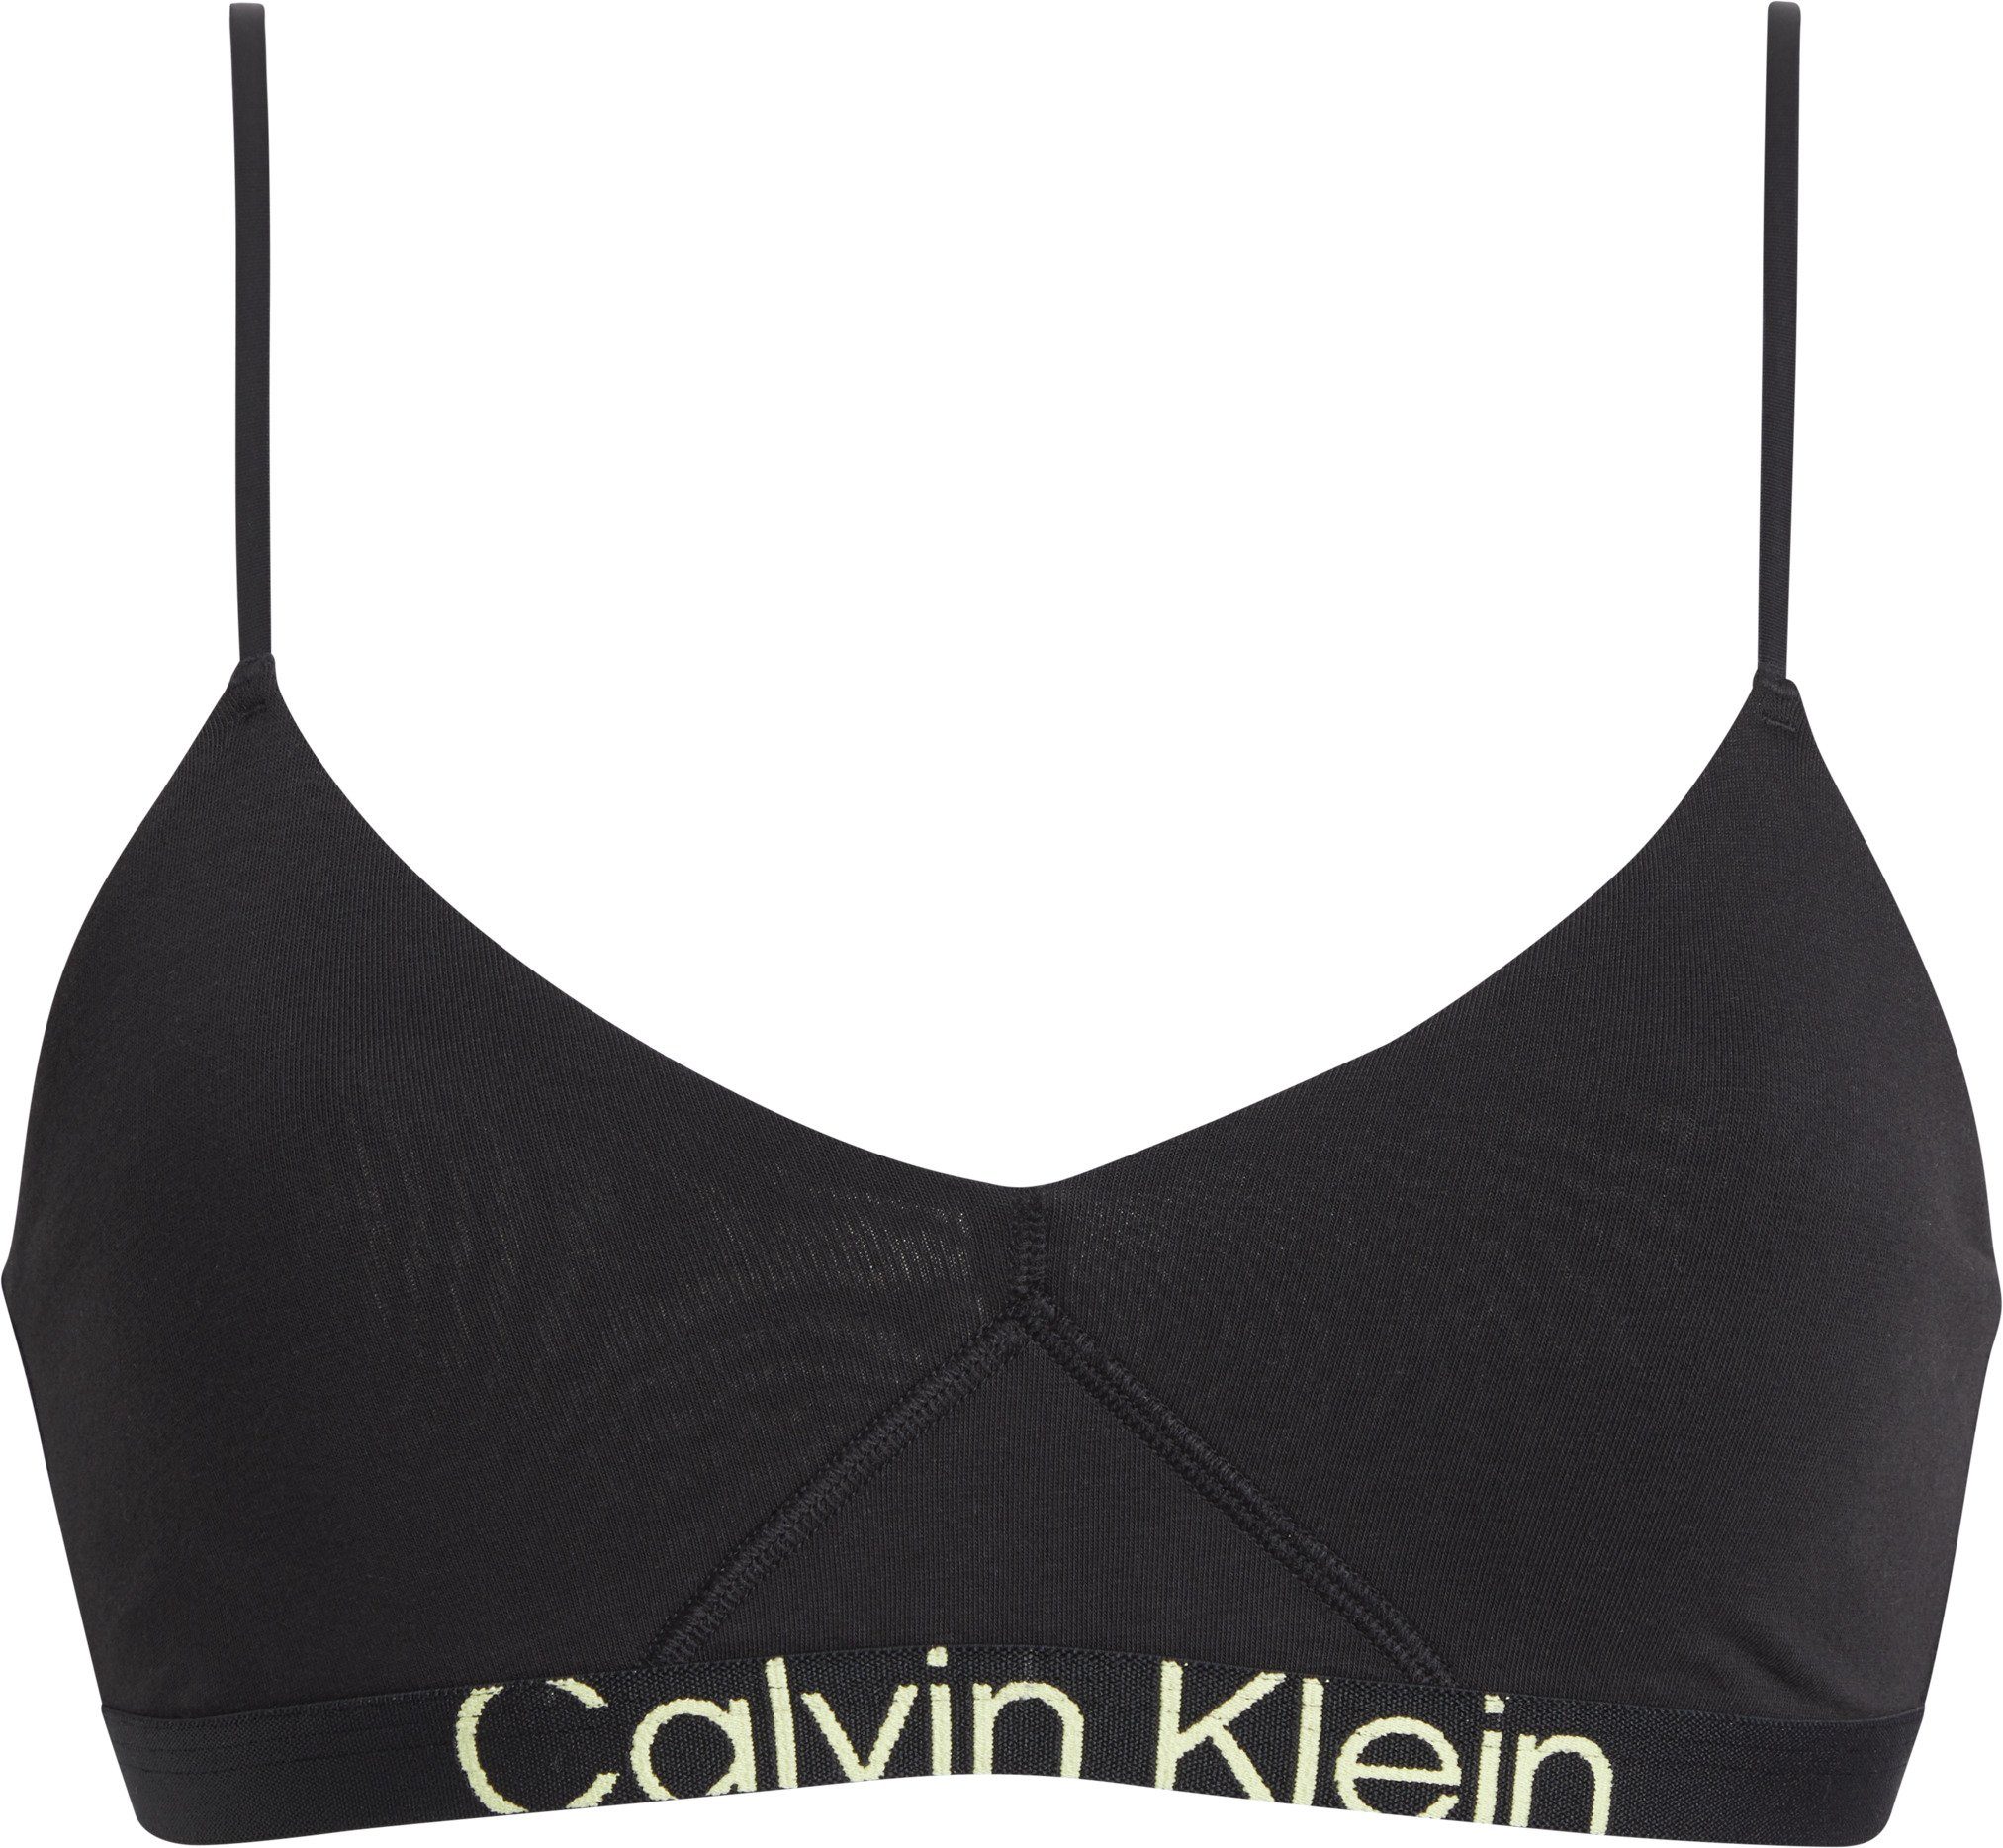 BRALETTE Calvin UNLINED Underwear schwarz Klein sportlichem mit Bralette-BH Elastikbund